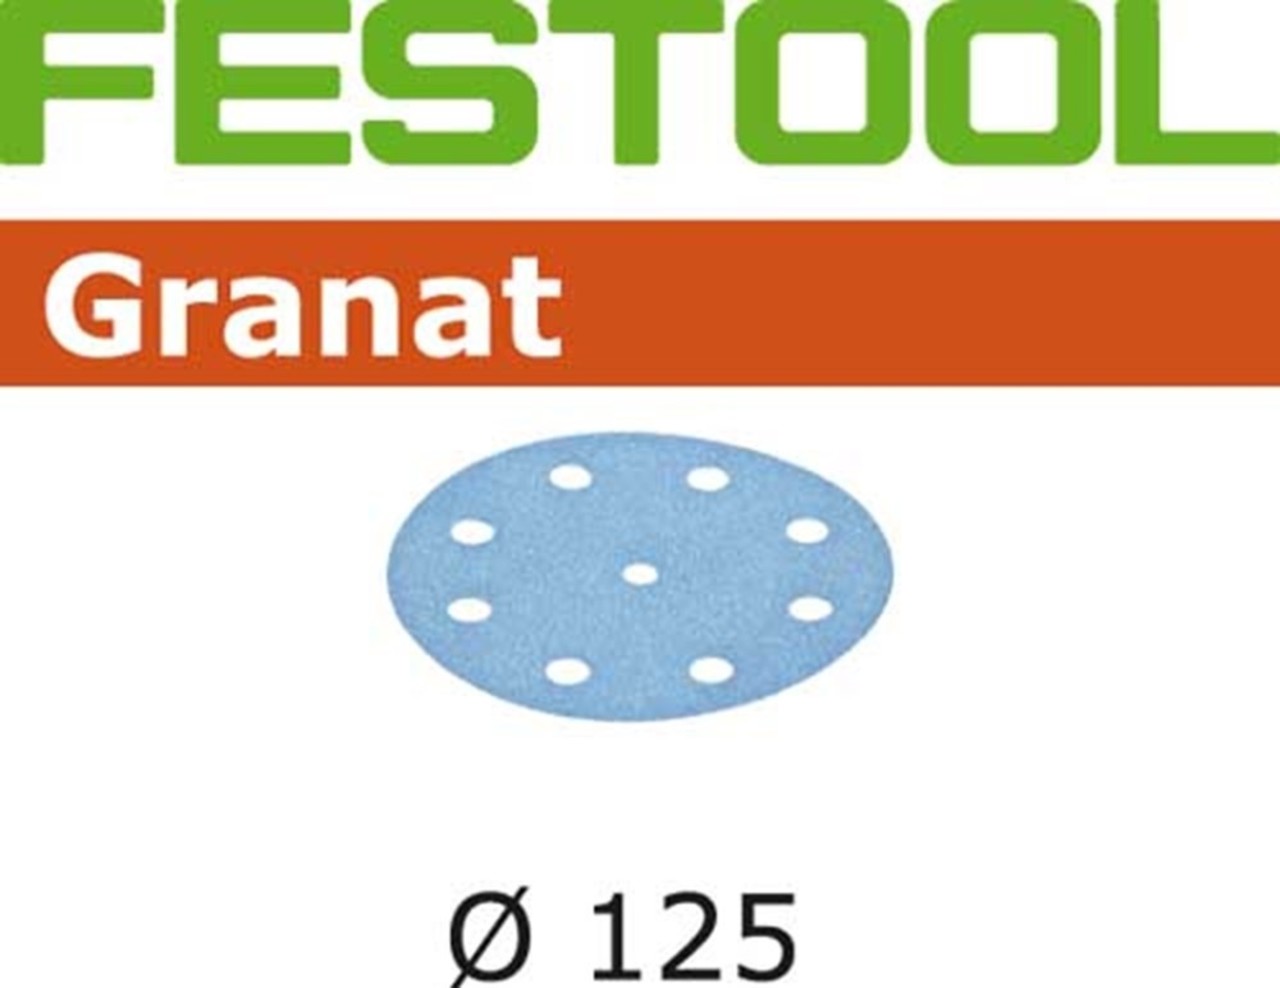 Daar metalen Onvergetelijk Festool Schuurpapier Granat STF D125/8 P120 GR/10 - 497148 kopen? |  Toolsvoordelig.nl - Toolsvoordelig.nl